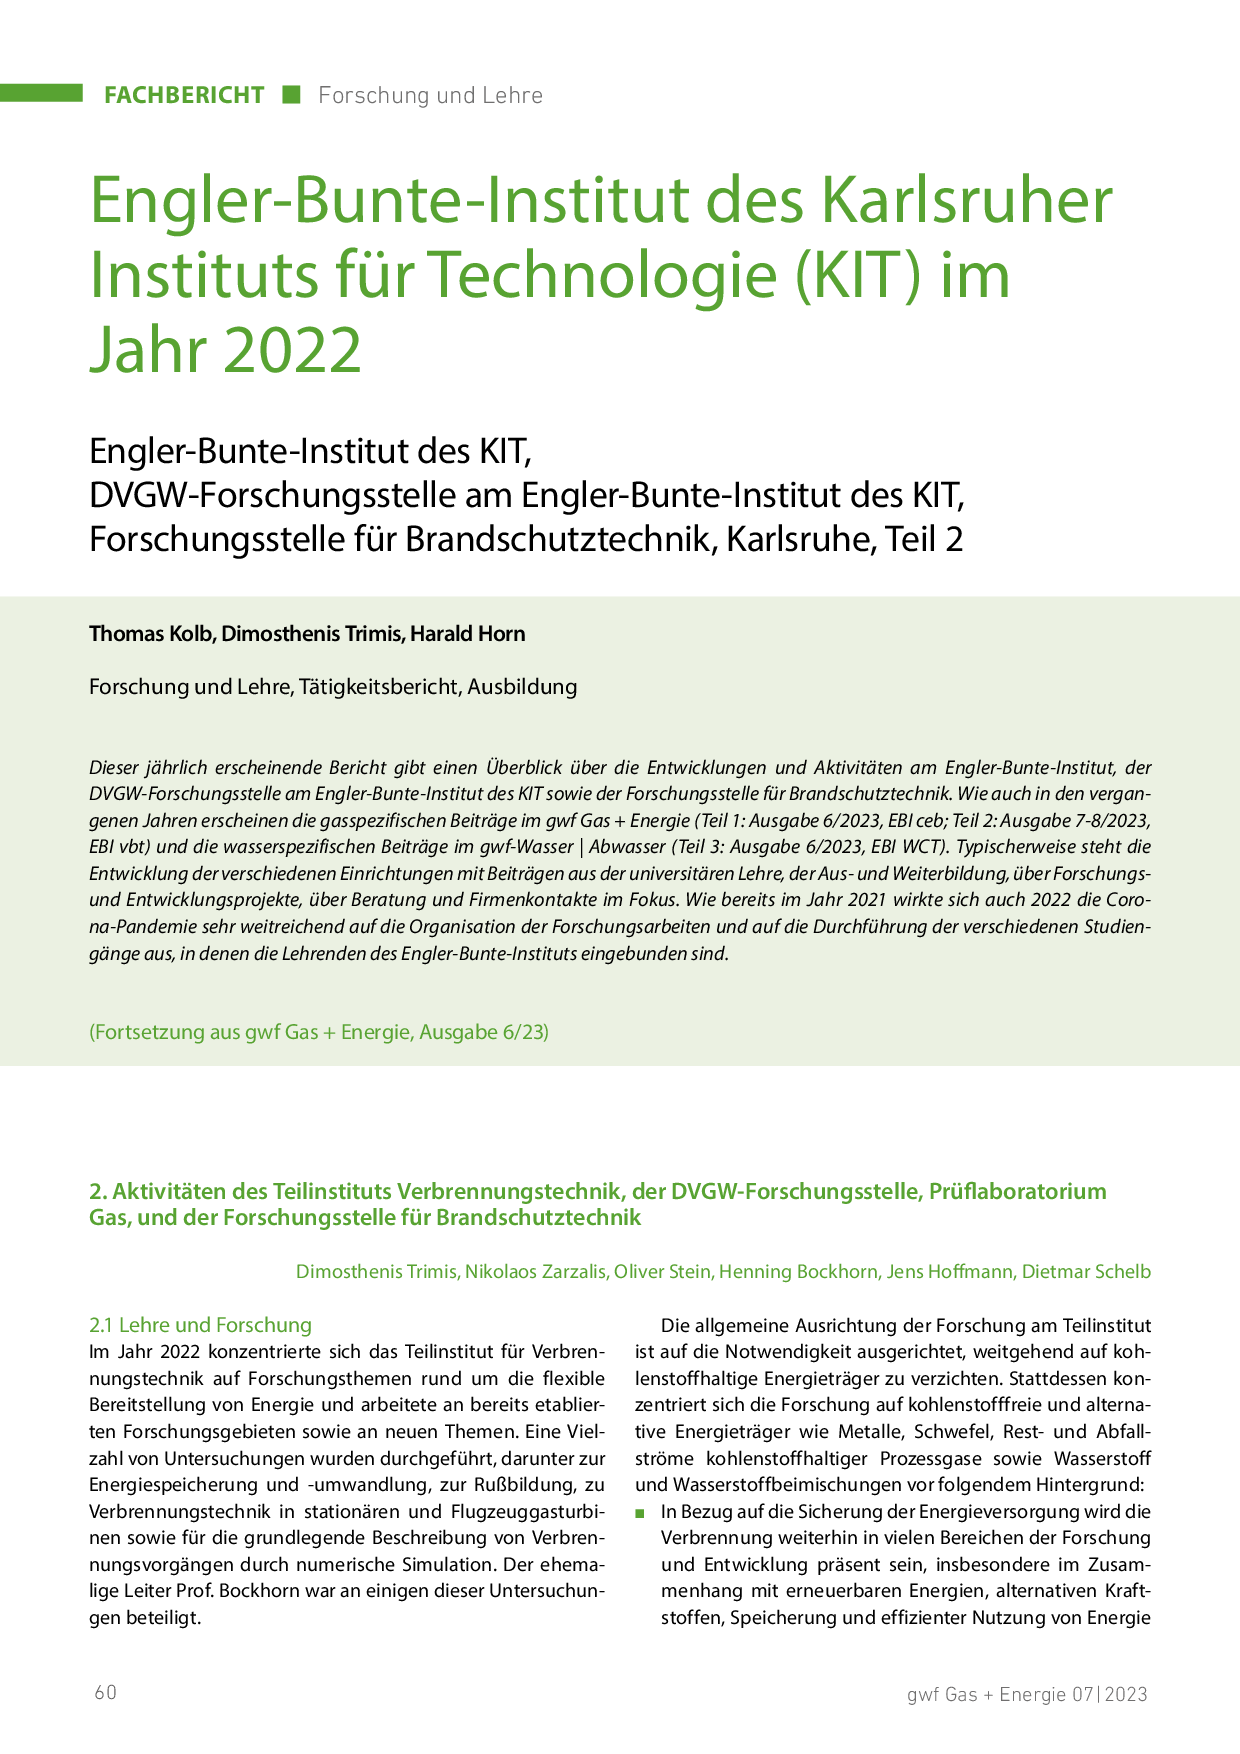 Engler-Bunte-Institut des Karlsruher Instituts für Technologie (KIT) im Jahr 2021